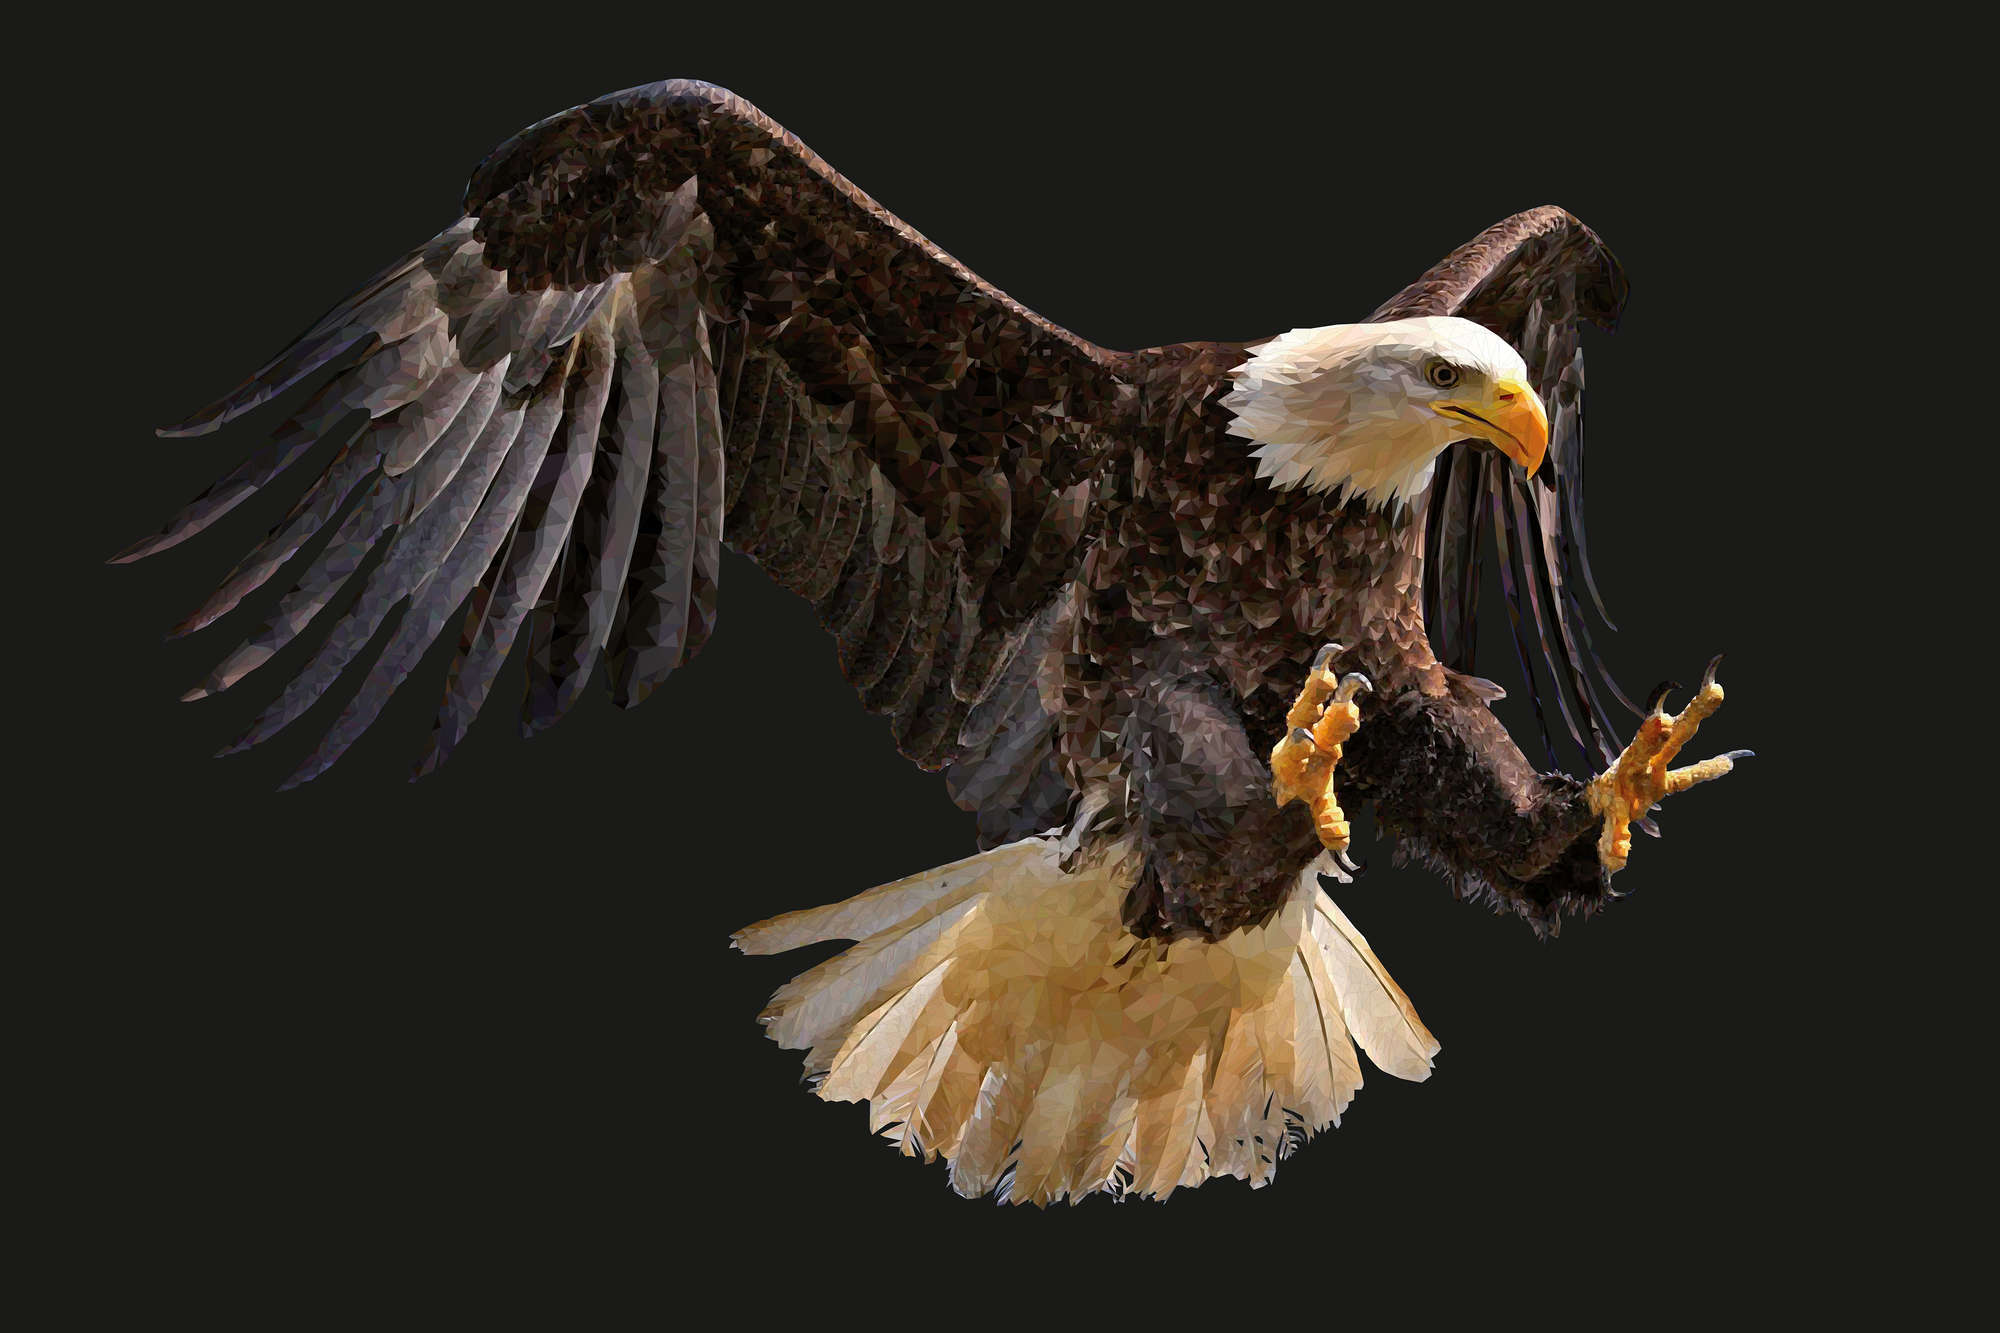             Motivo gráfico de águila en papel pintado sobre vellón liso nacarado
        